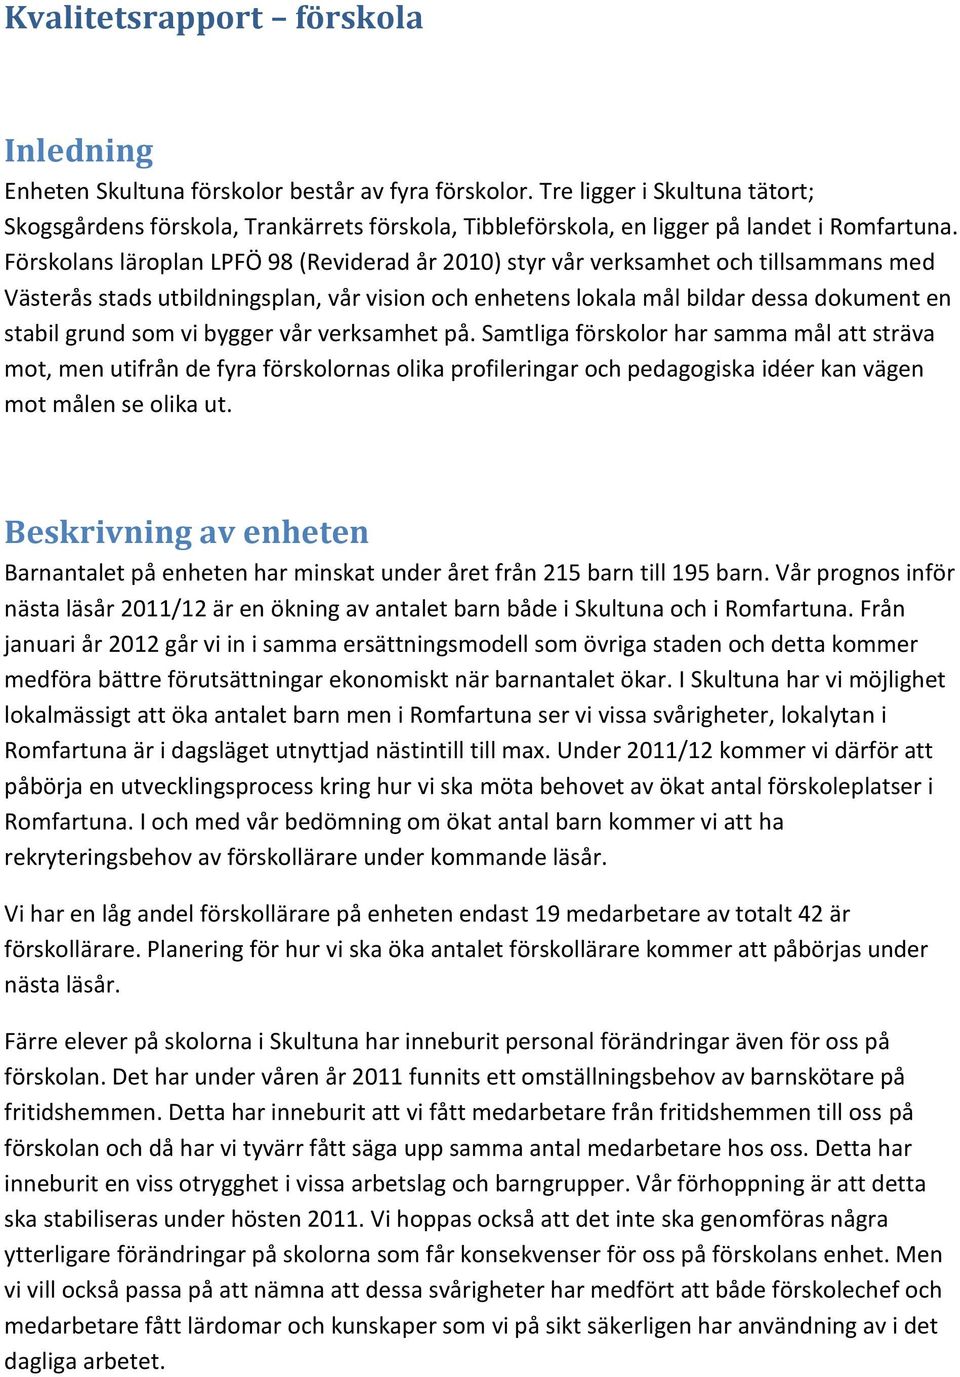 Förskolans läroplan LPFÖ 98 (Reviderad år 2010) styr vår verksamhet och tillsammans med Västerås stads utbildningsplan, vår vision och enhetens lokala mål bildar dessa dokument en stabil grund som vi